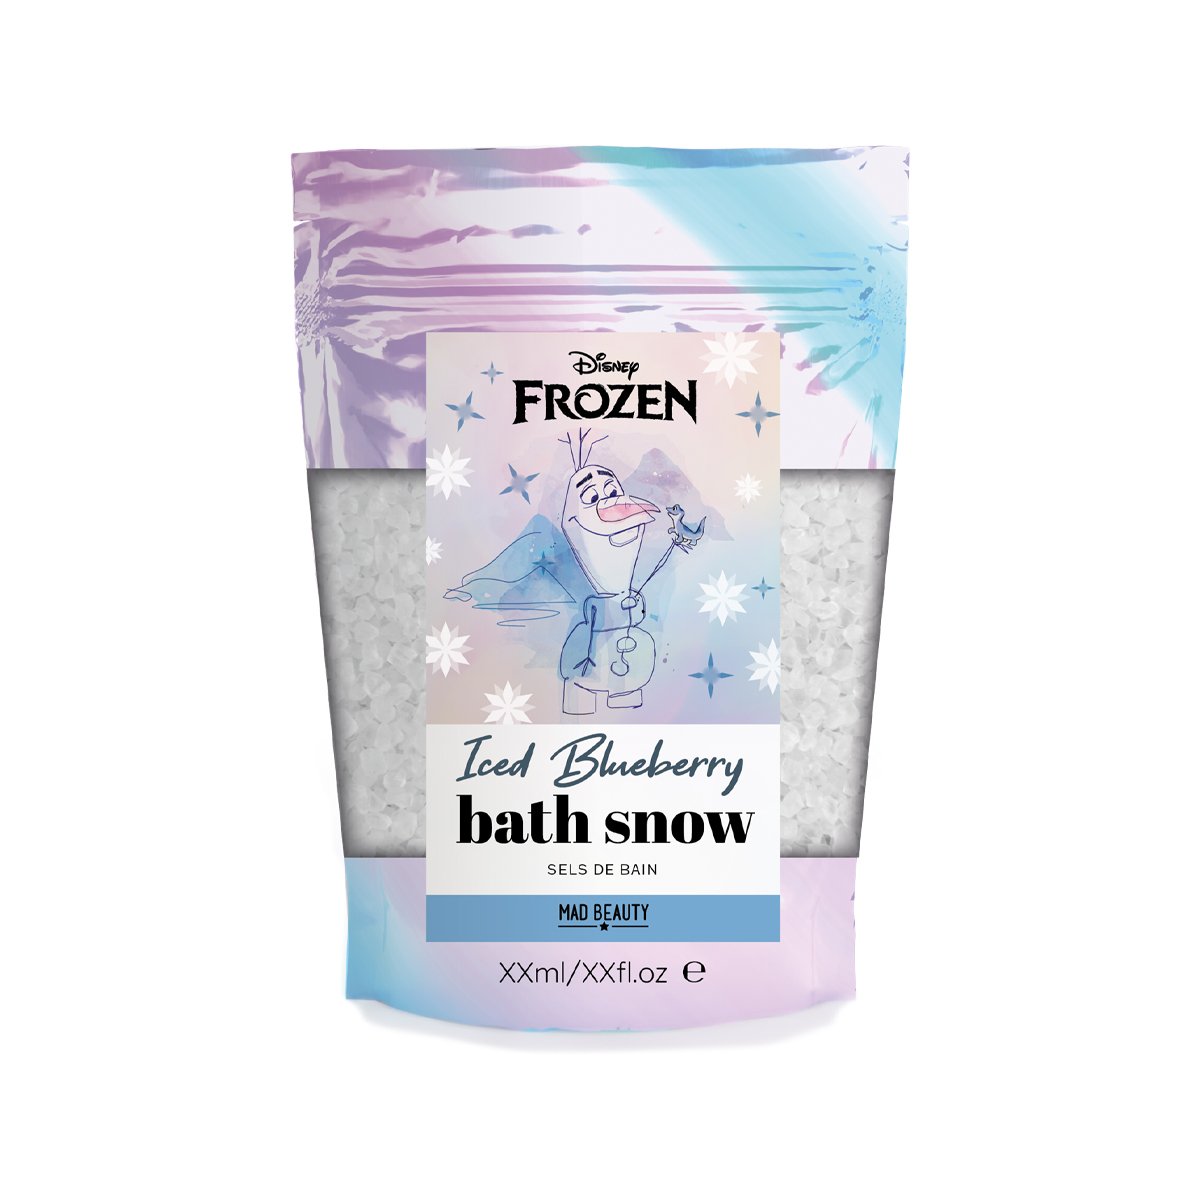 Disney Frozen Olaf Bath Snow 350g